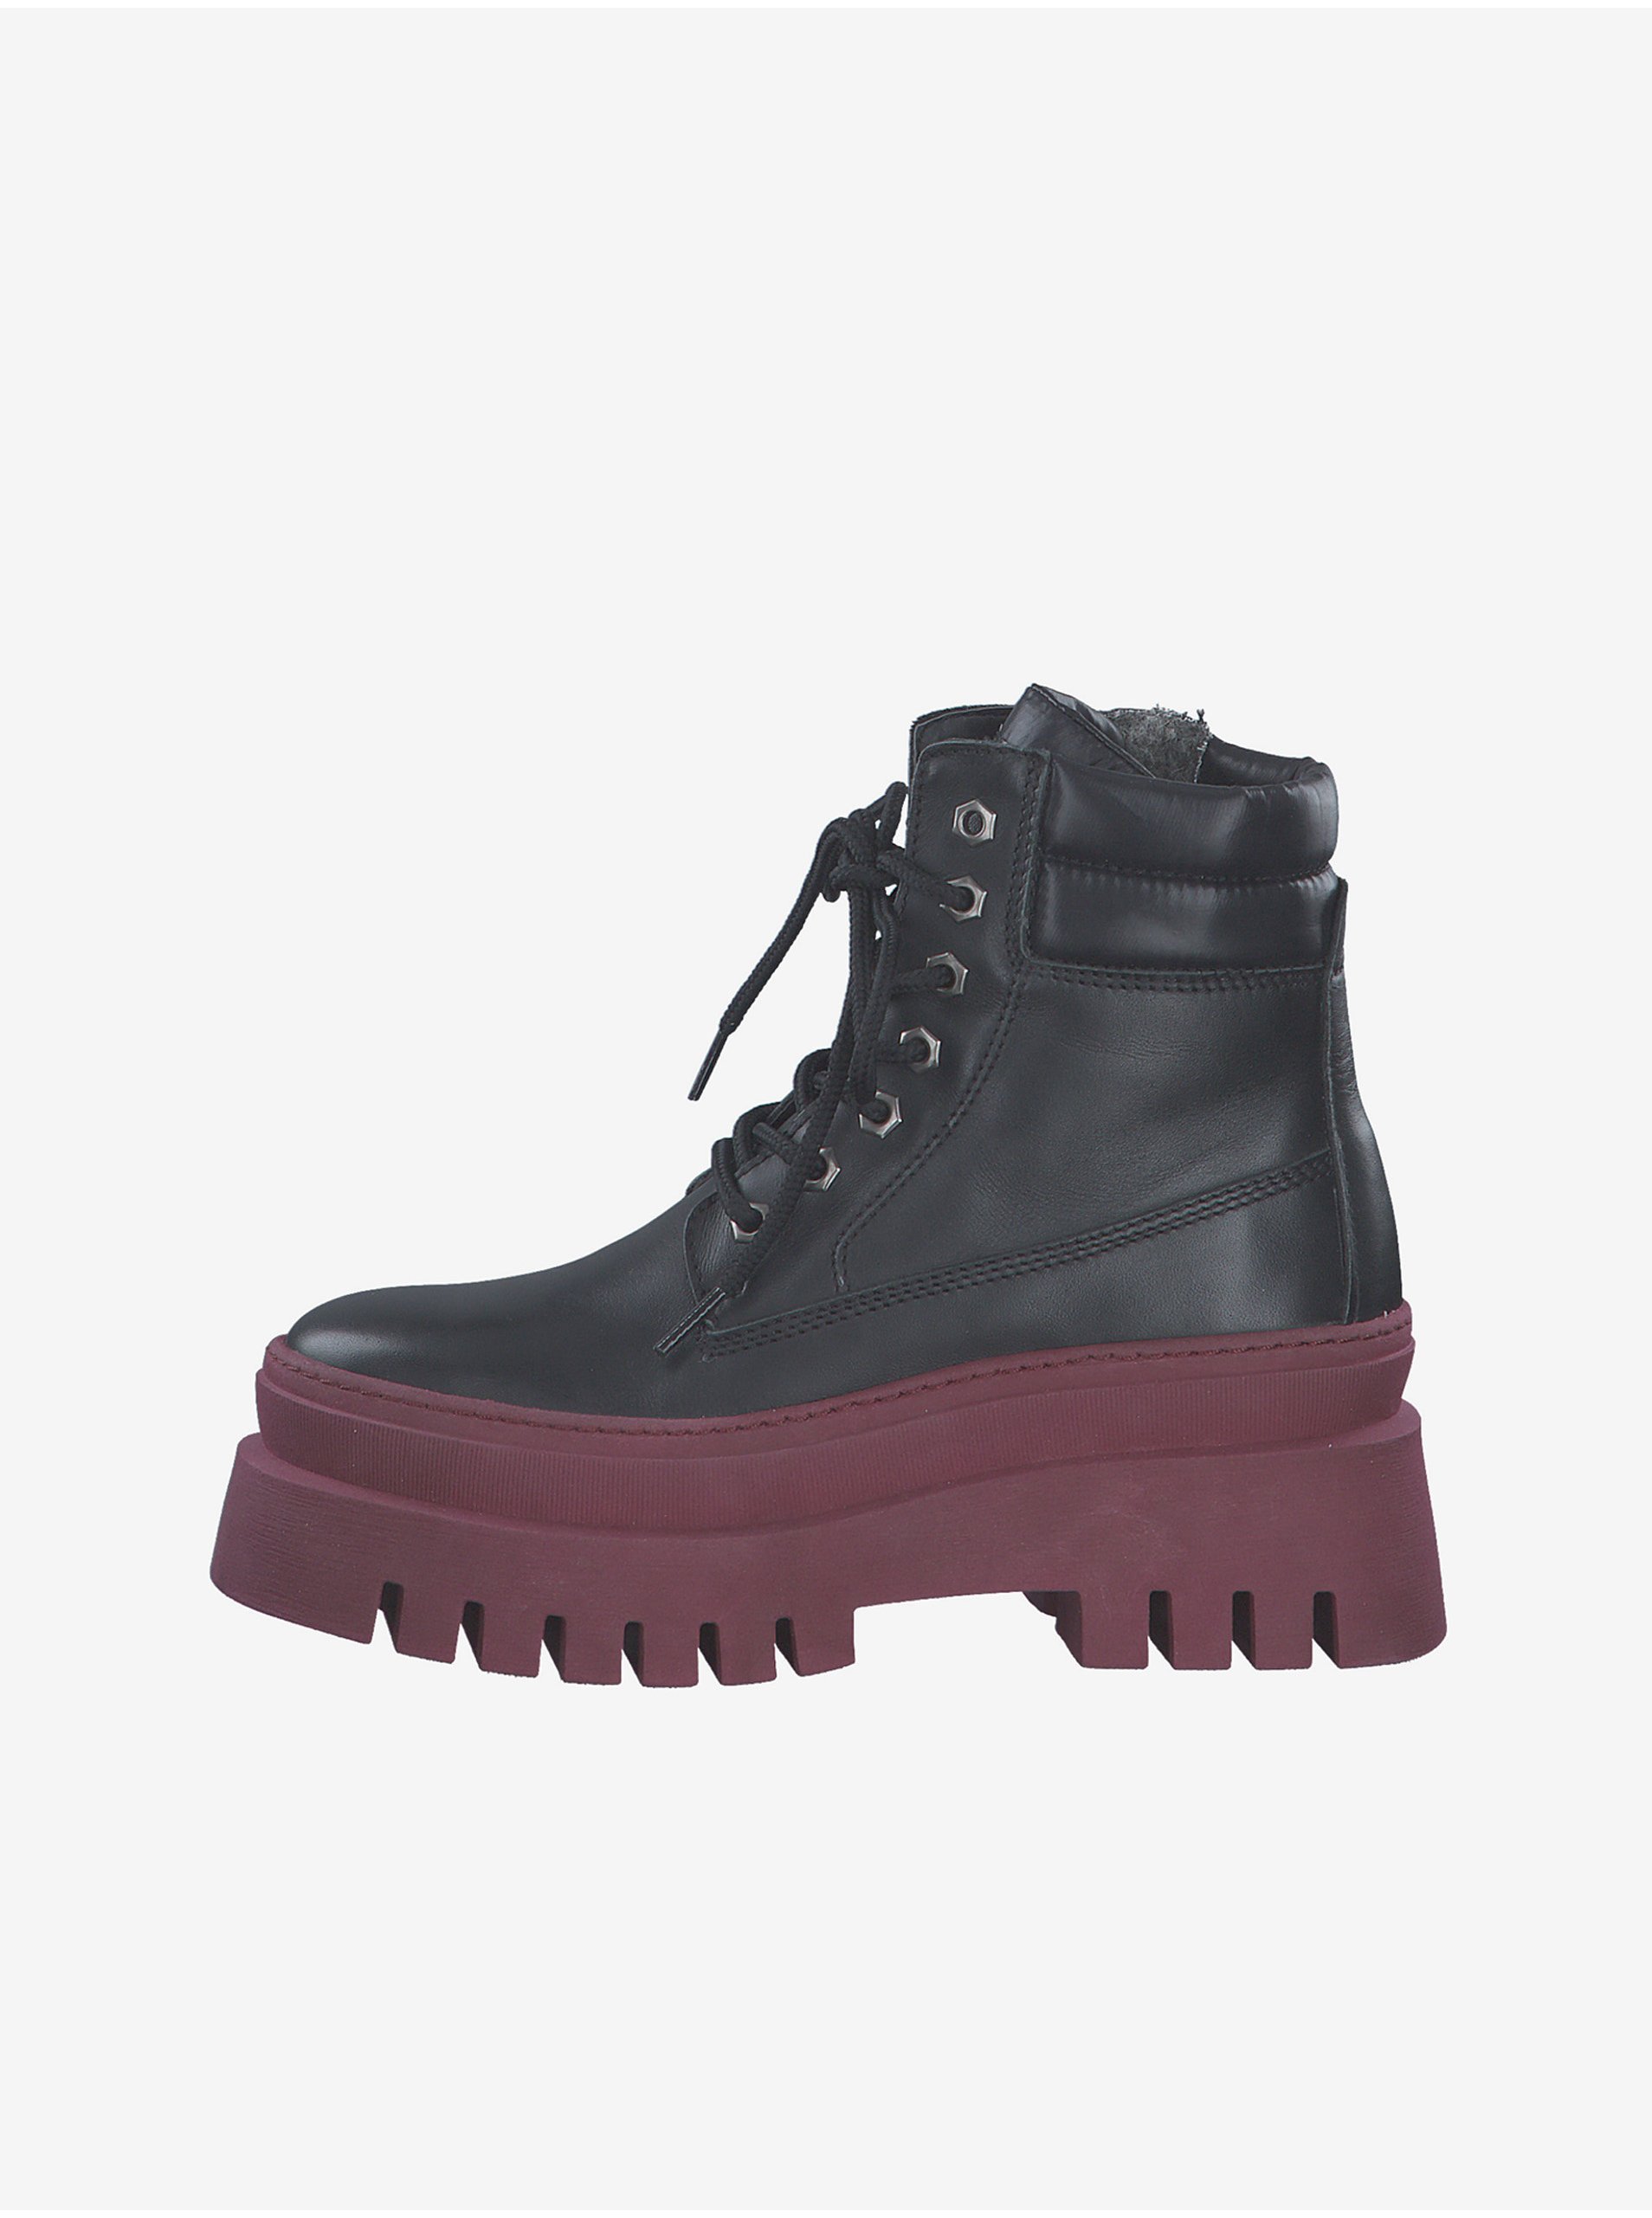 E-shop Vínovo-černé kožené kotníkové zimní boty s kožíškem Tamaris